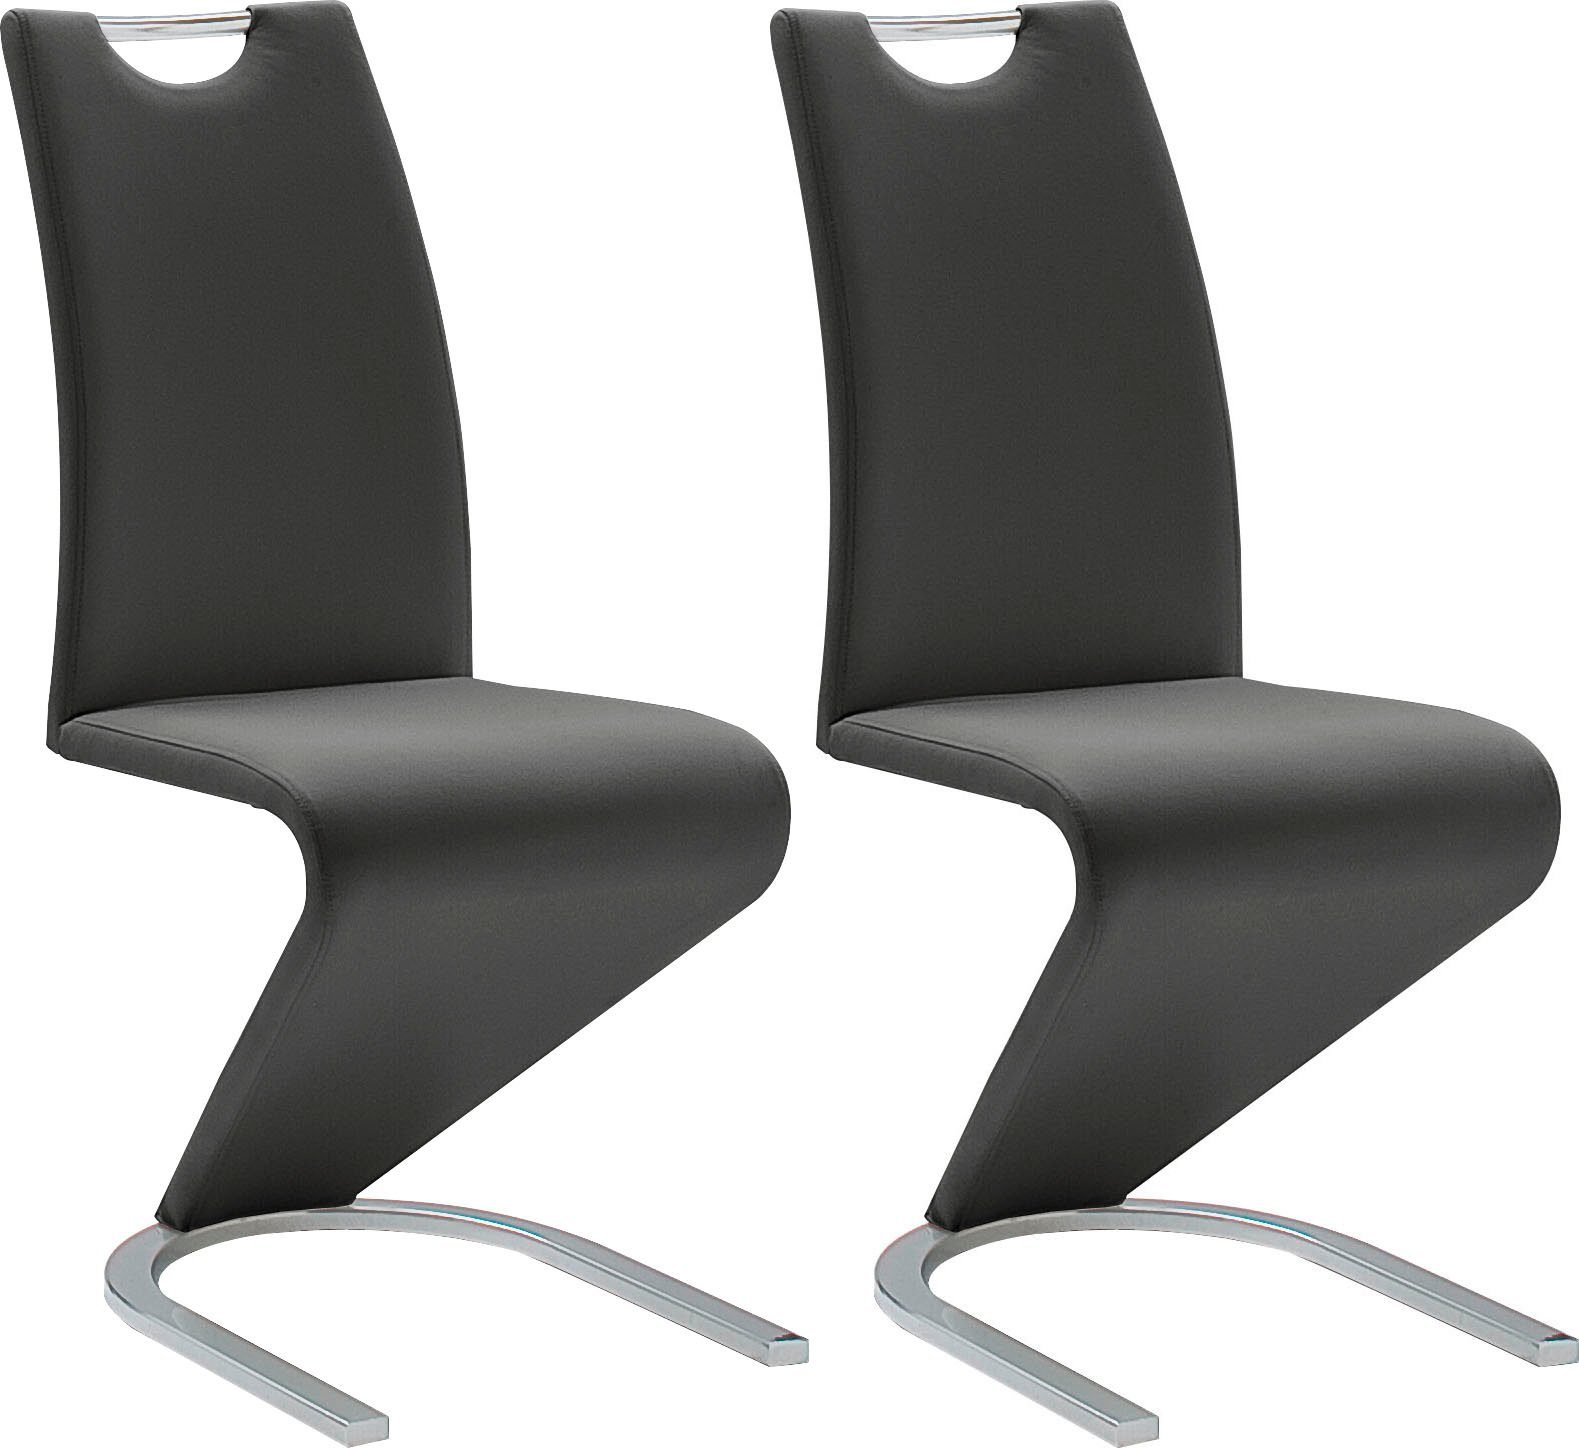 mca furniture vrijdragende stoel amado set van 2, 4 en 6 stuks, stoel belastbaar tot 120 kg (set) zwart